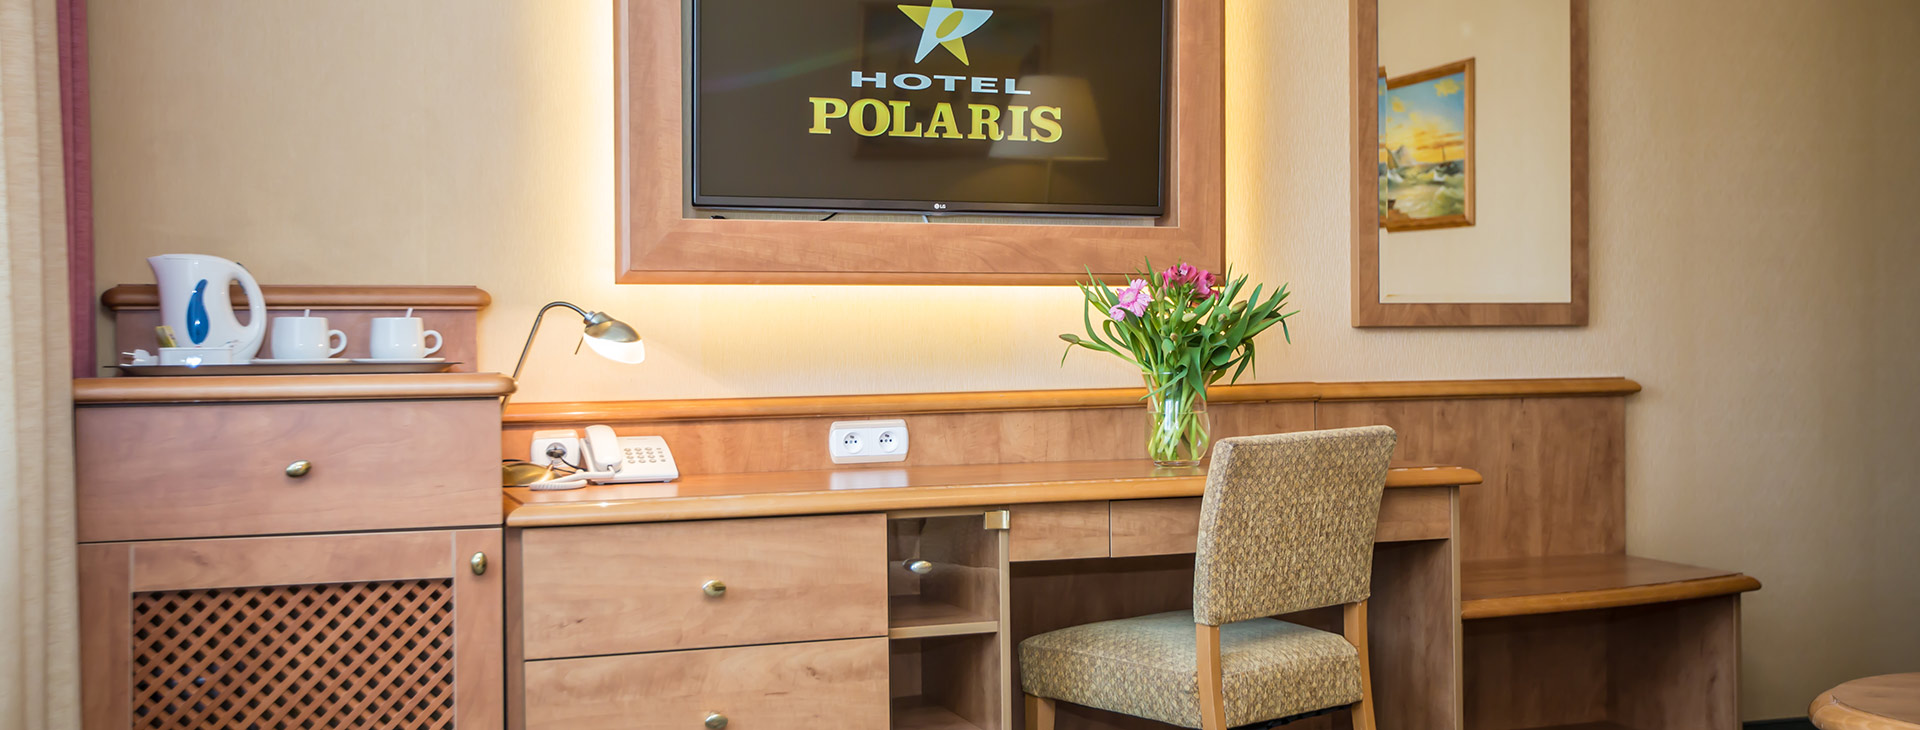 Hotel Polaris Obrázek1